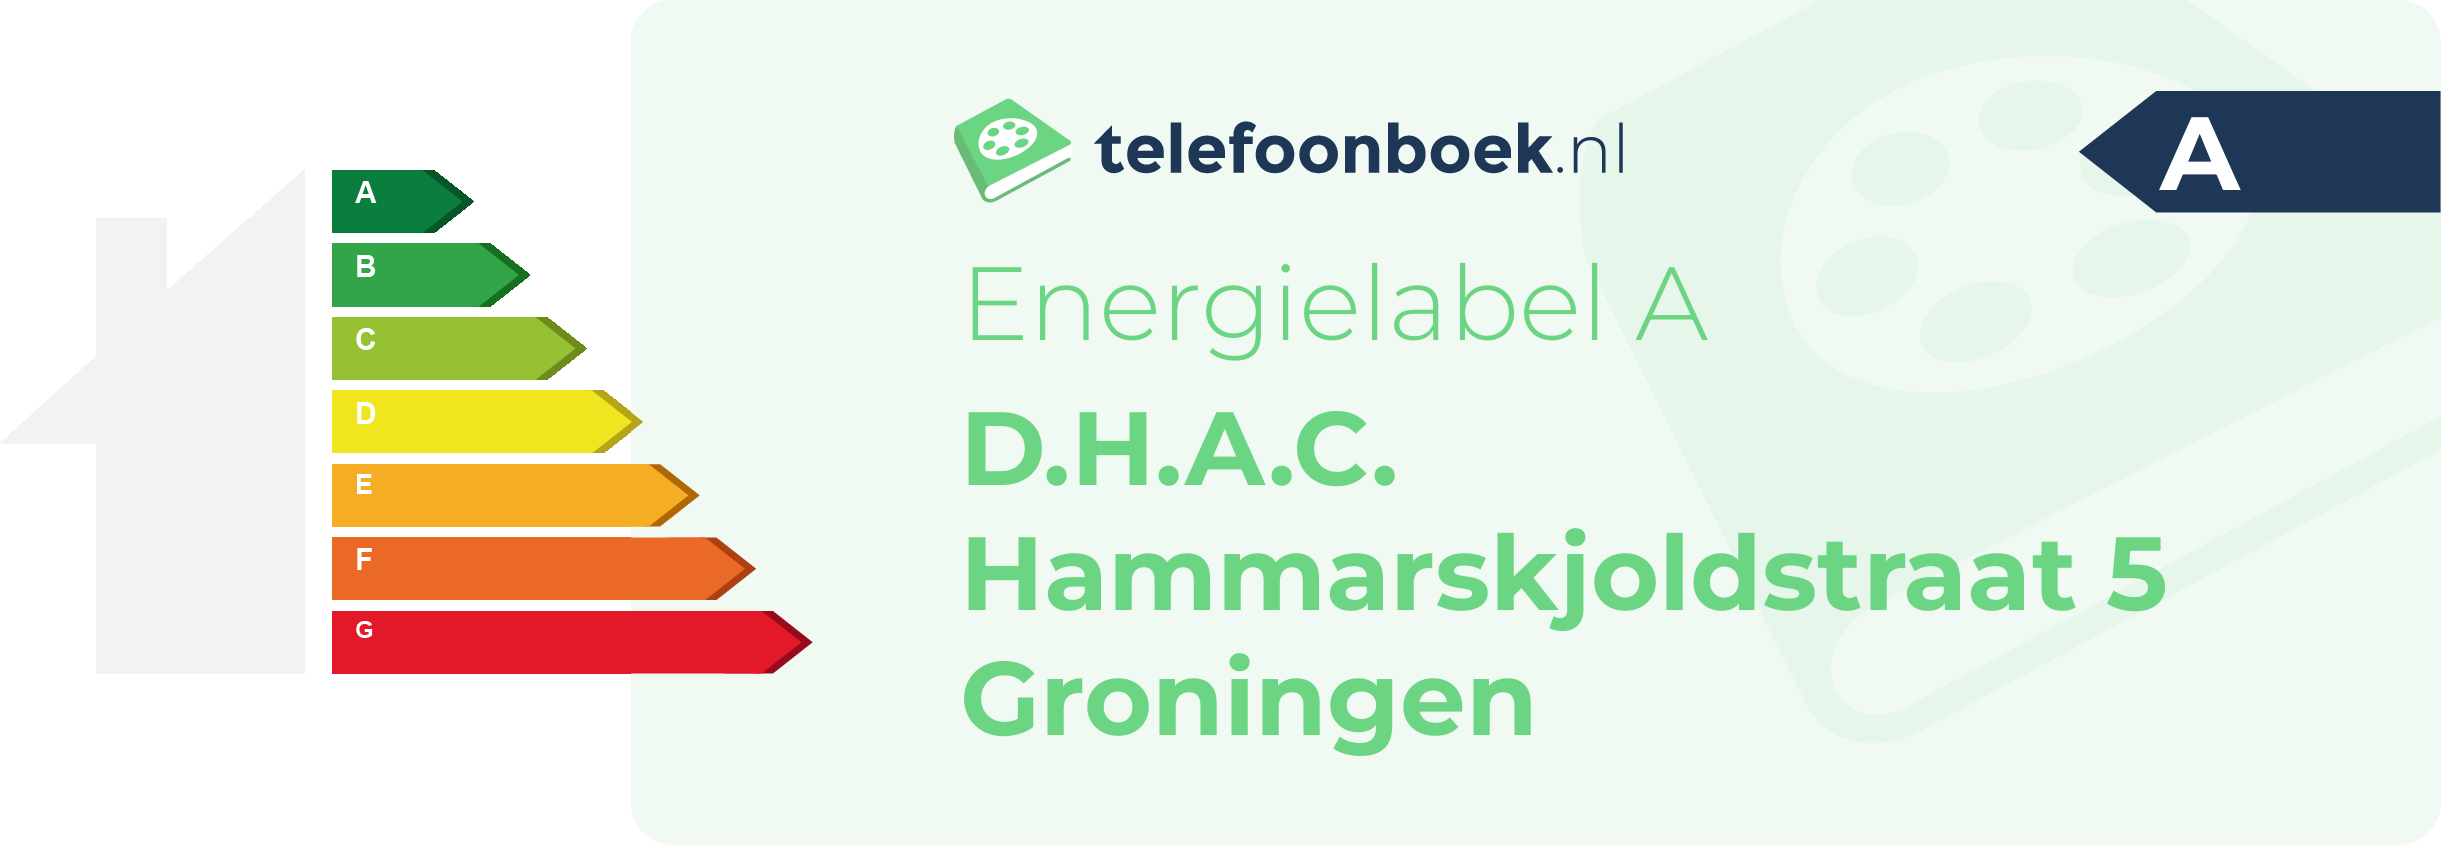 Energielabel D.H.A.C. Hammarskjoldstraat 5 Groningen